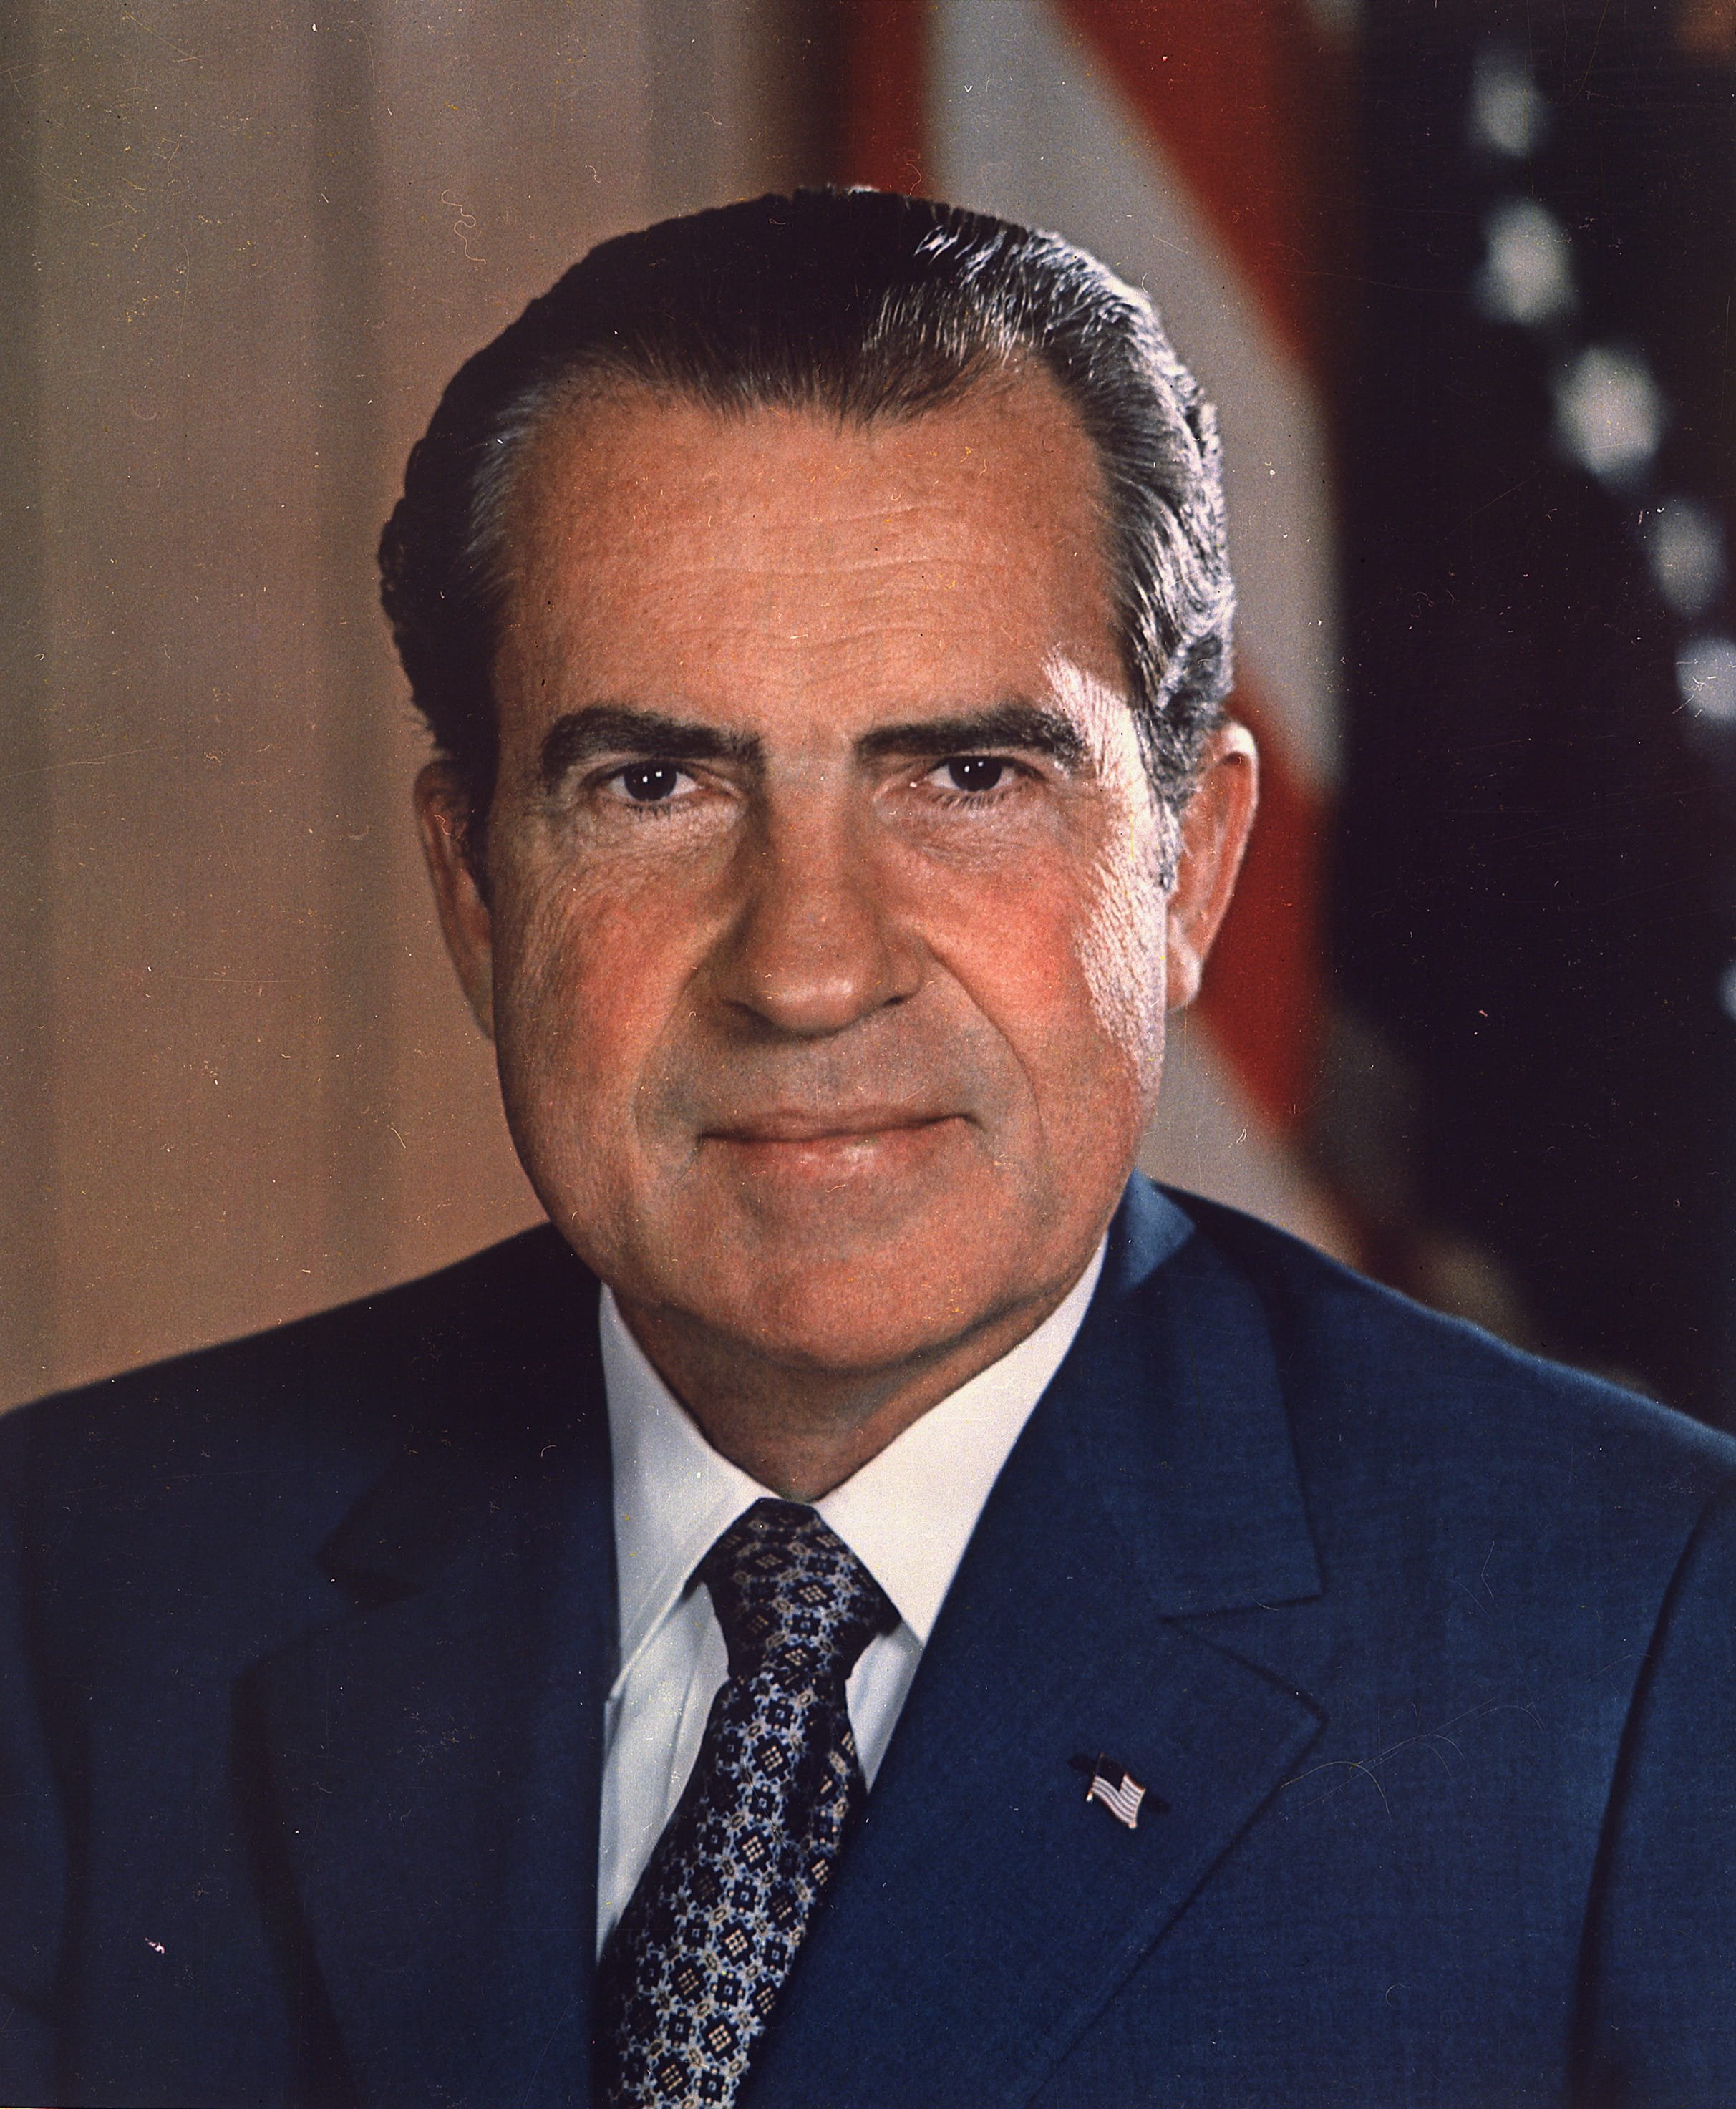 Muere Gordon Liddy, exasesor de Nixon y uno de los cerebros del Watergate